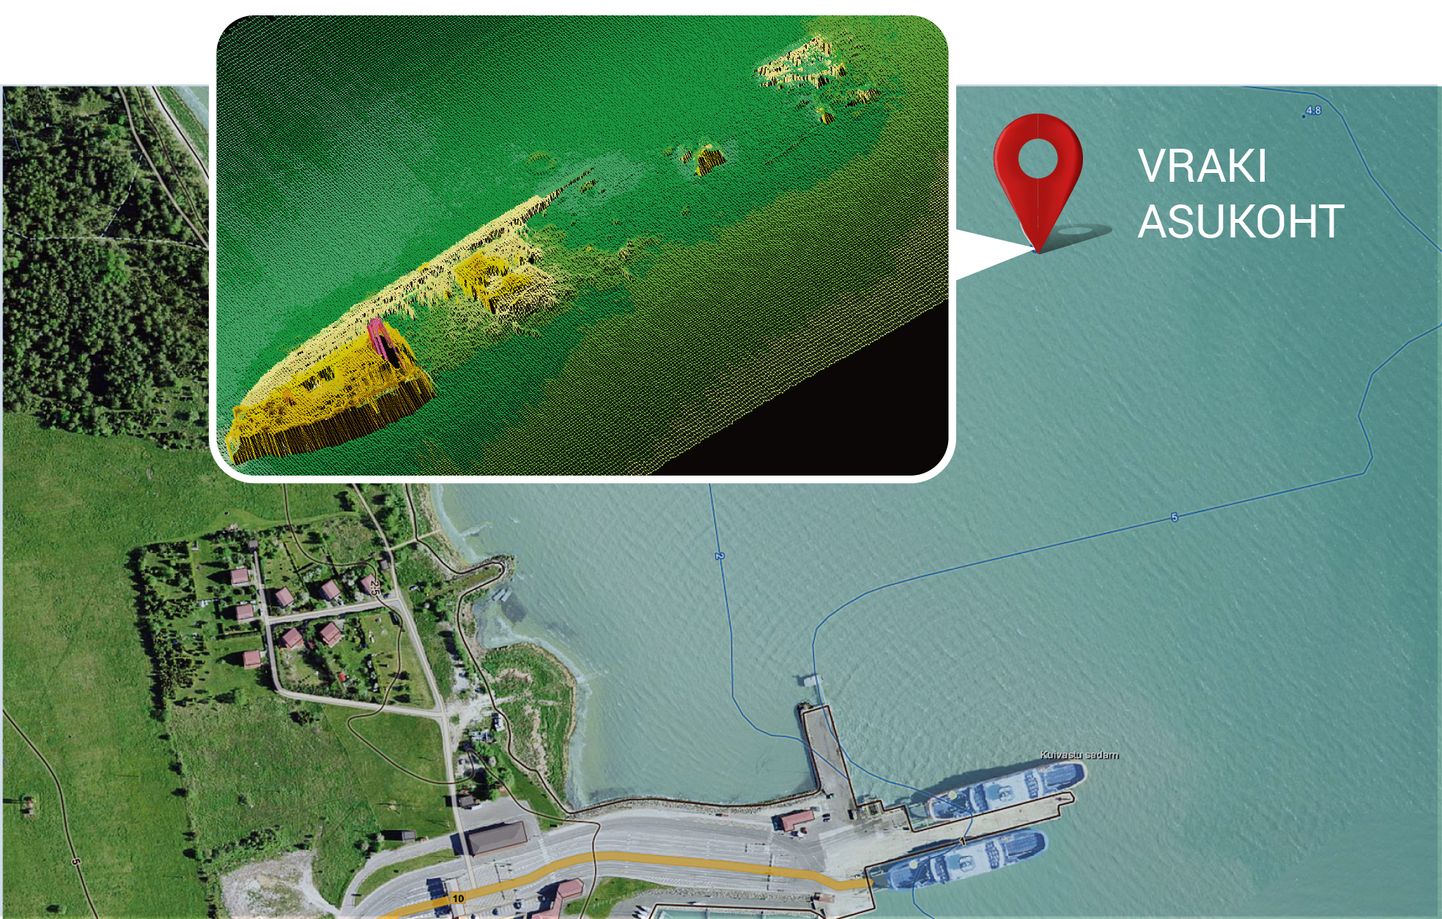 Miinitraaleri vrakk lebab Kuivastu sadamast 360 meetrit põhja pool vaid nelja meetri sügavuses vees.